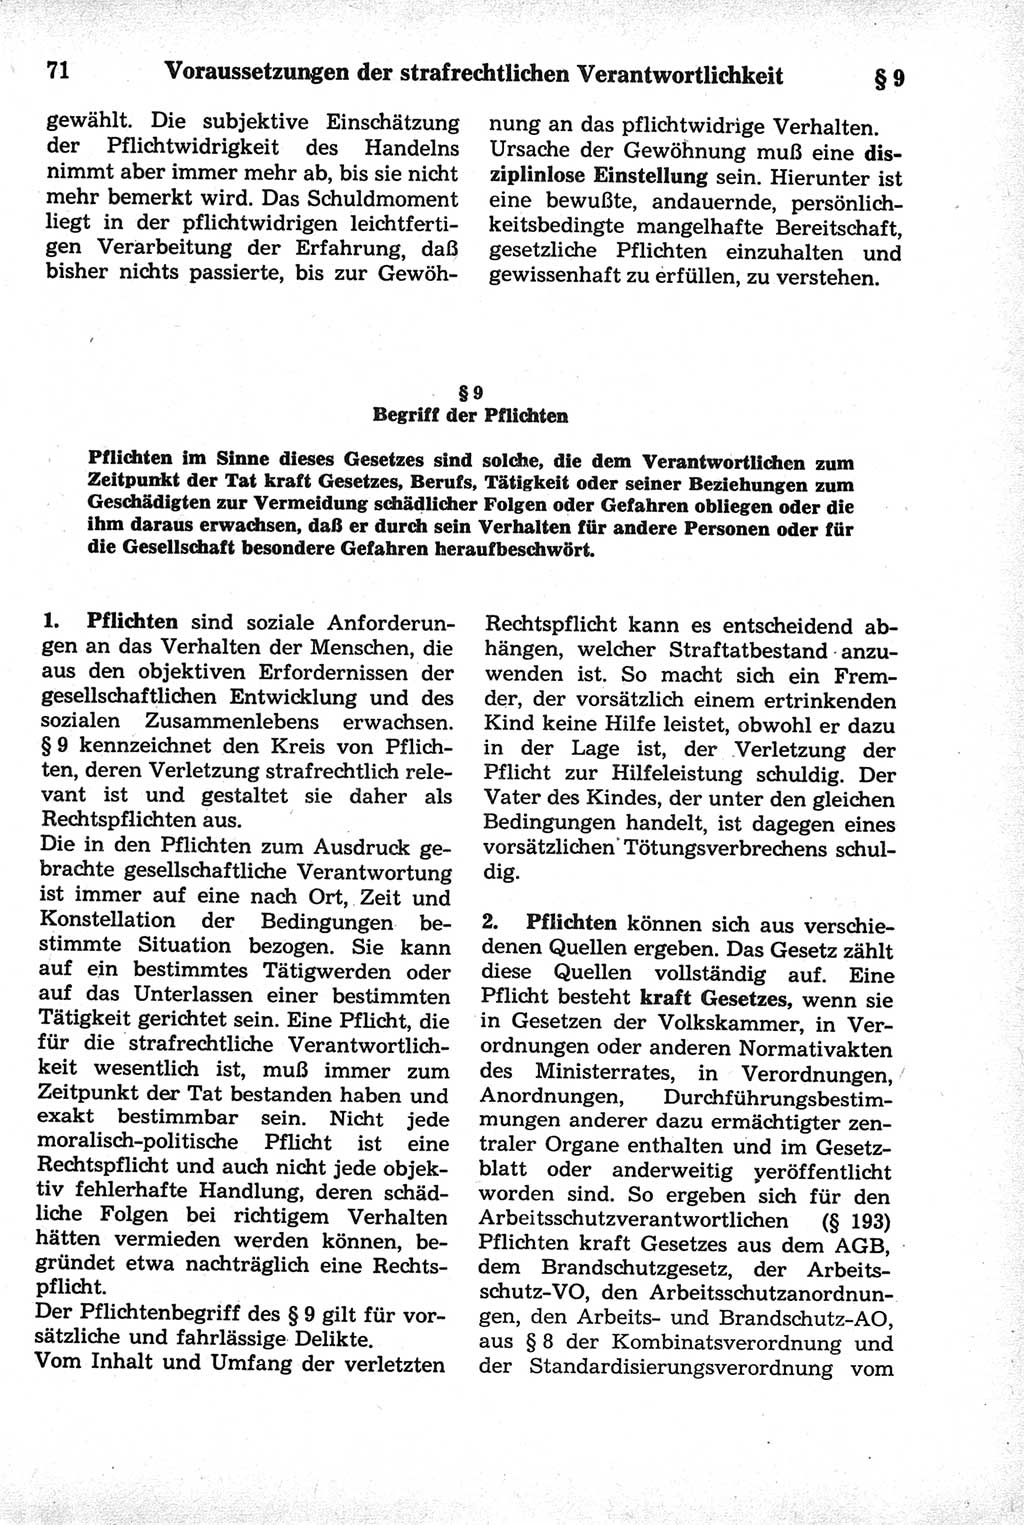 Strafrecht der Deutschen Demokratischen Republik (DDR), Kommentar zum Strafgesetzbuch (StGB) 1981, Seite 71 (Strafr. DDR Komm. StGB 1981, S. 71)